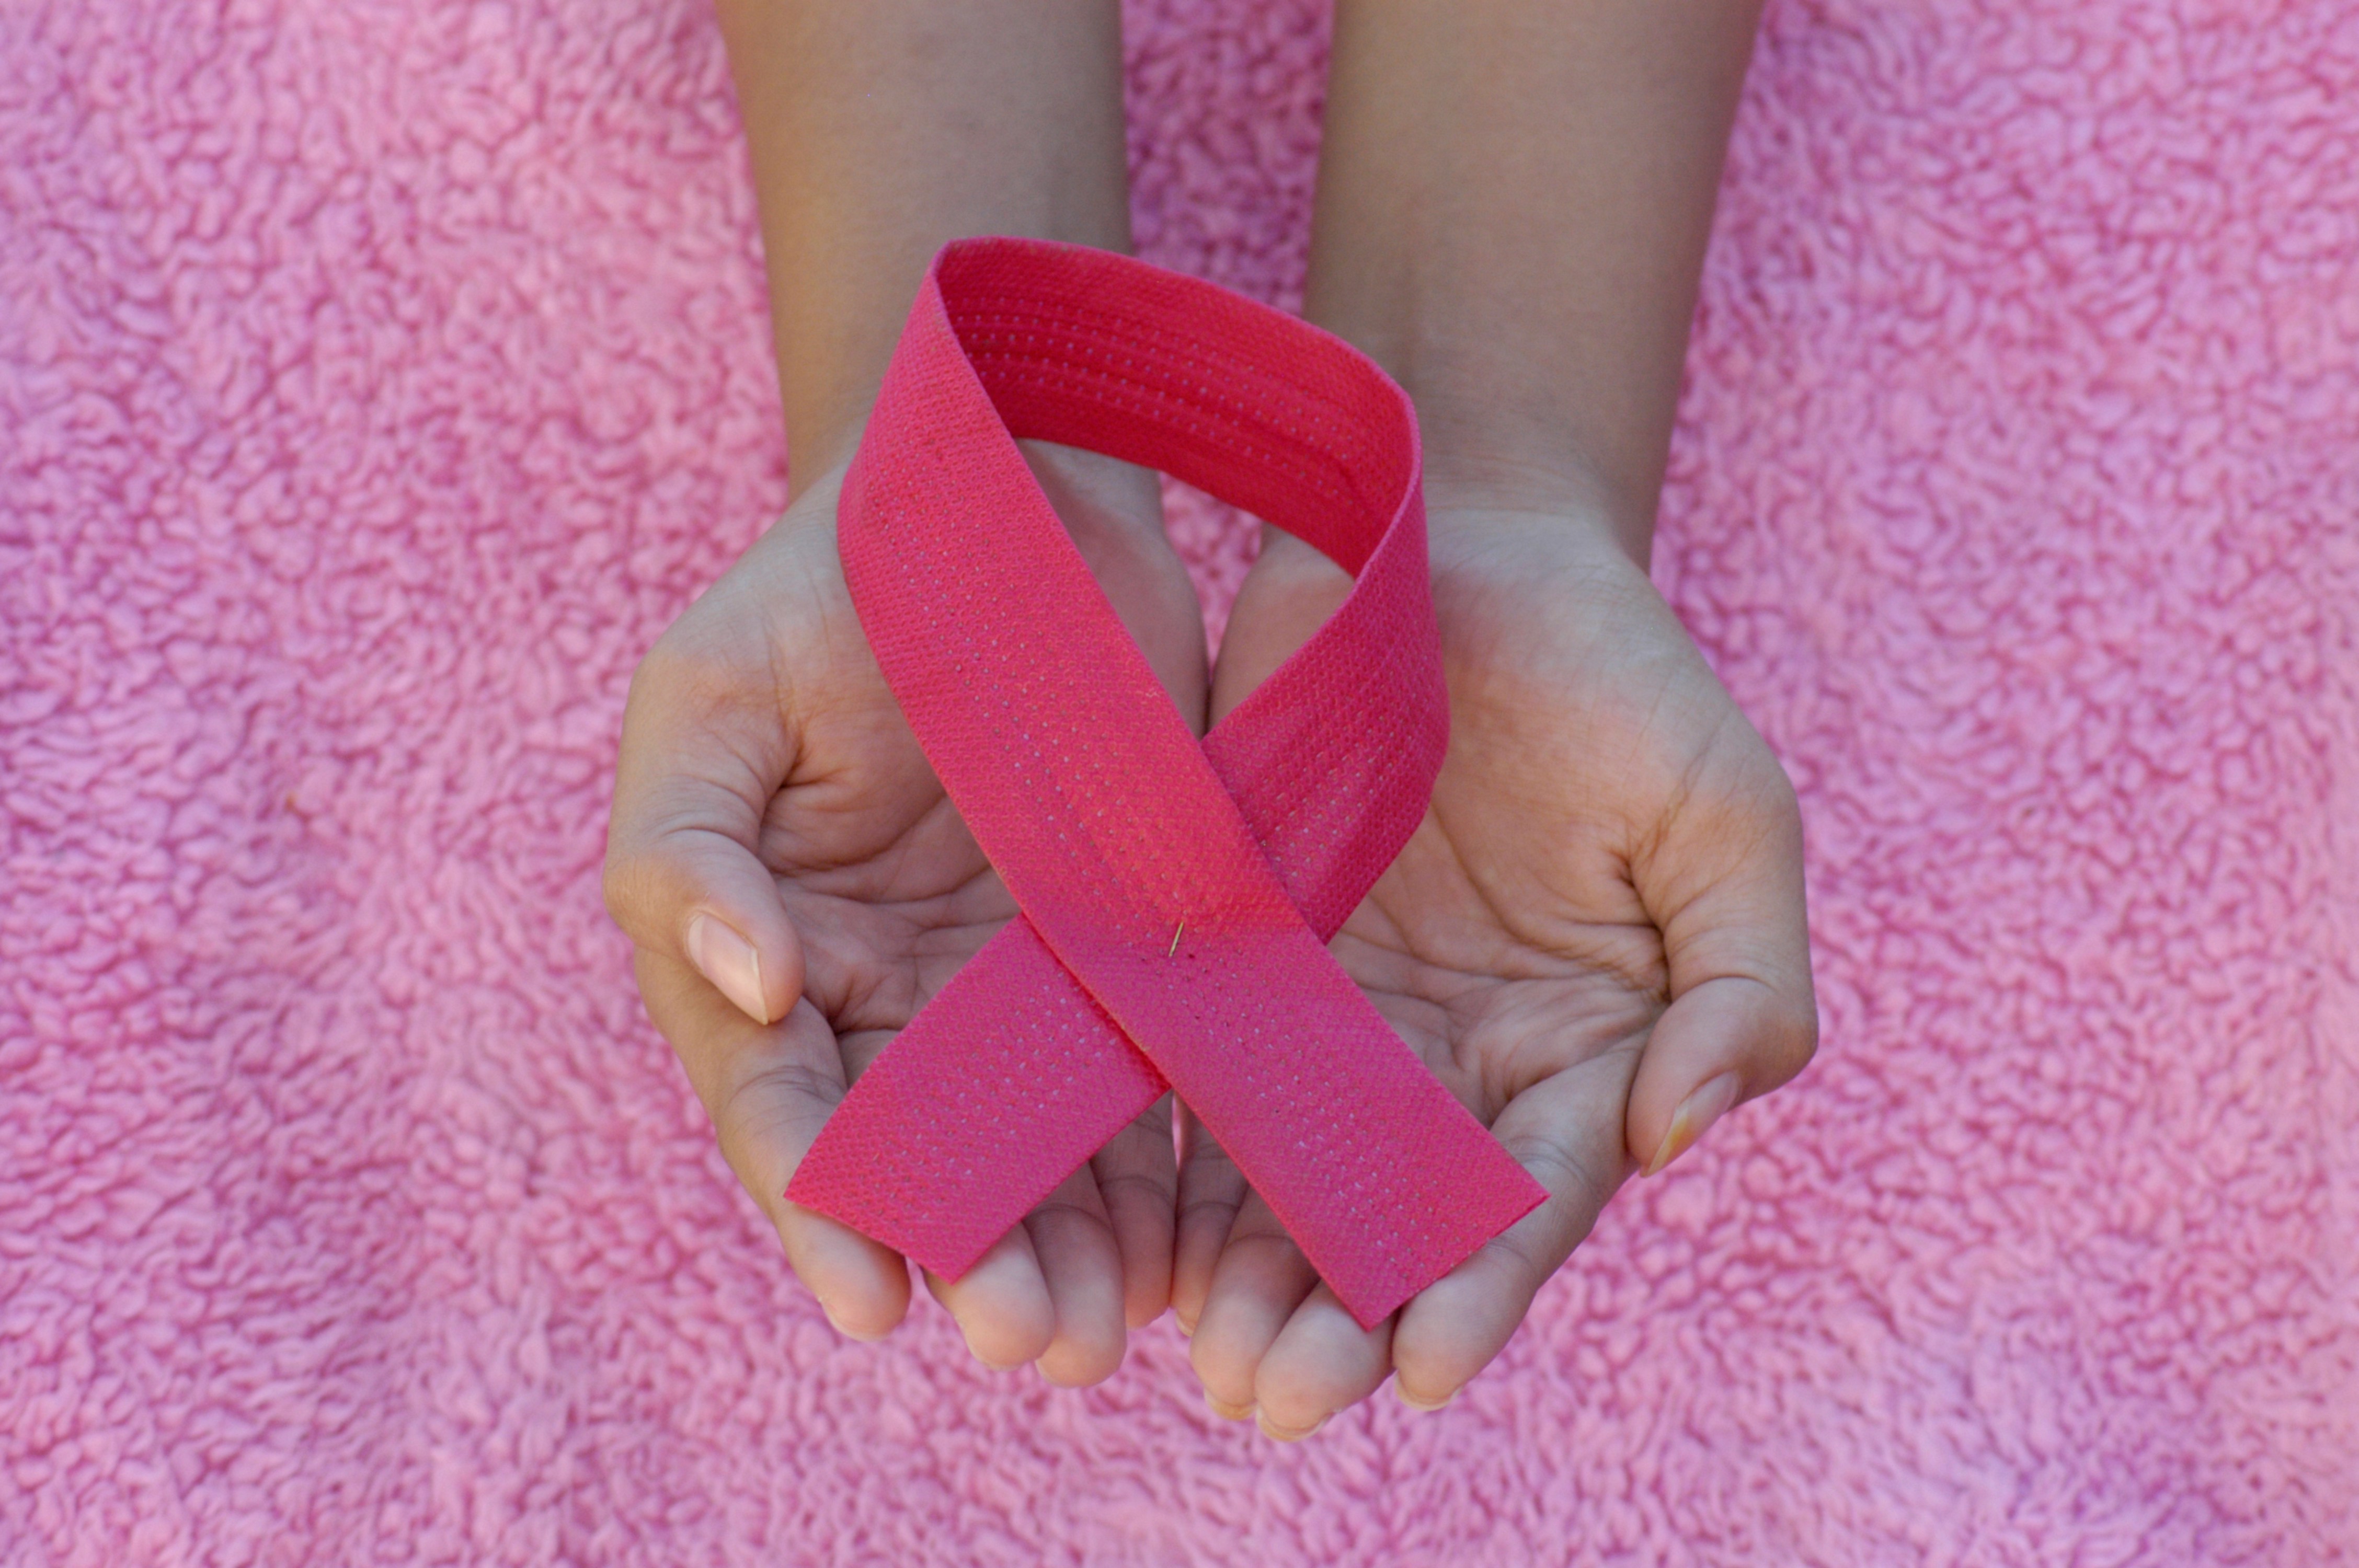 Partenariat pour améliorer la lutte contre le cancer du sein